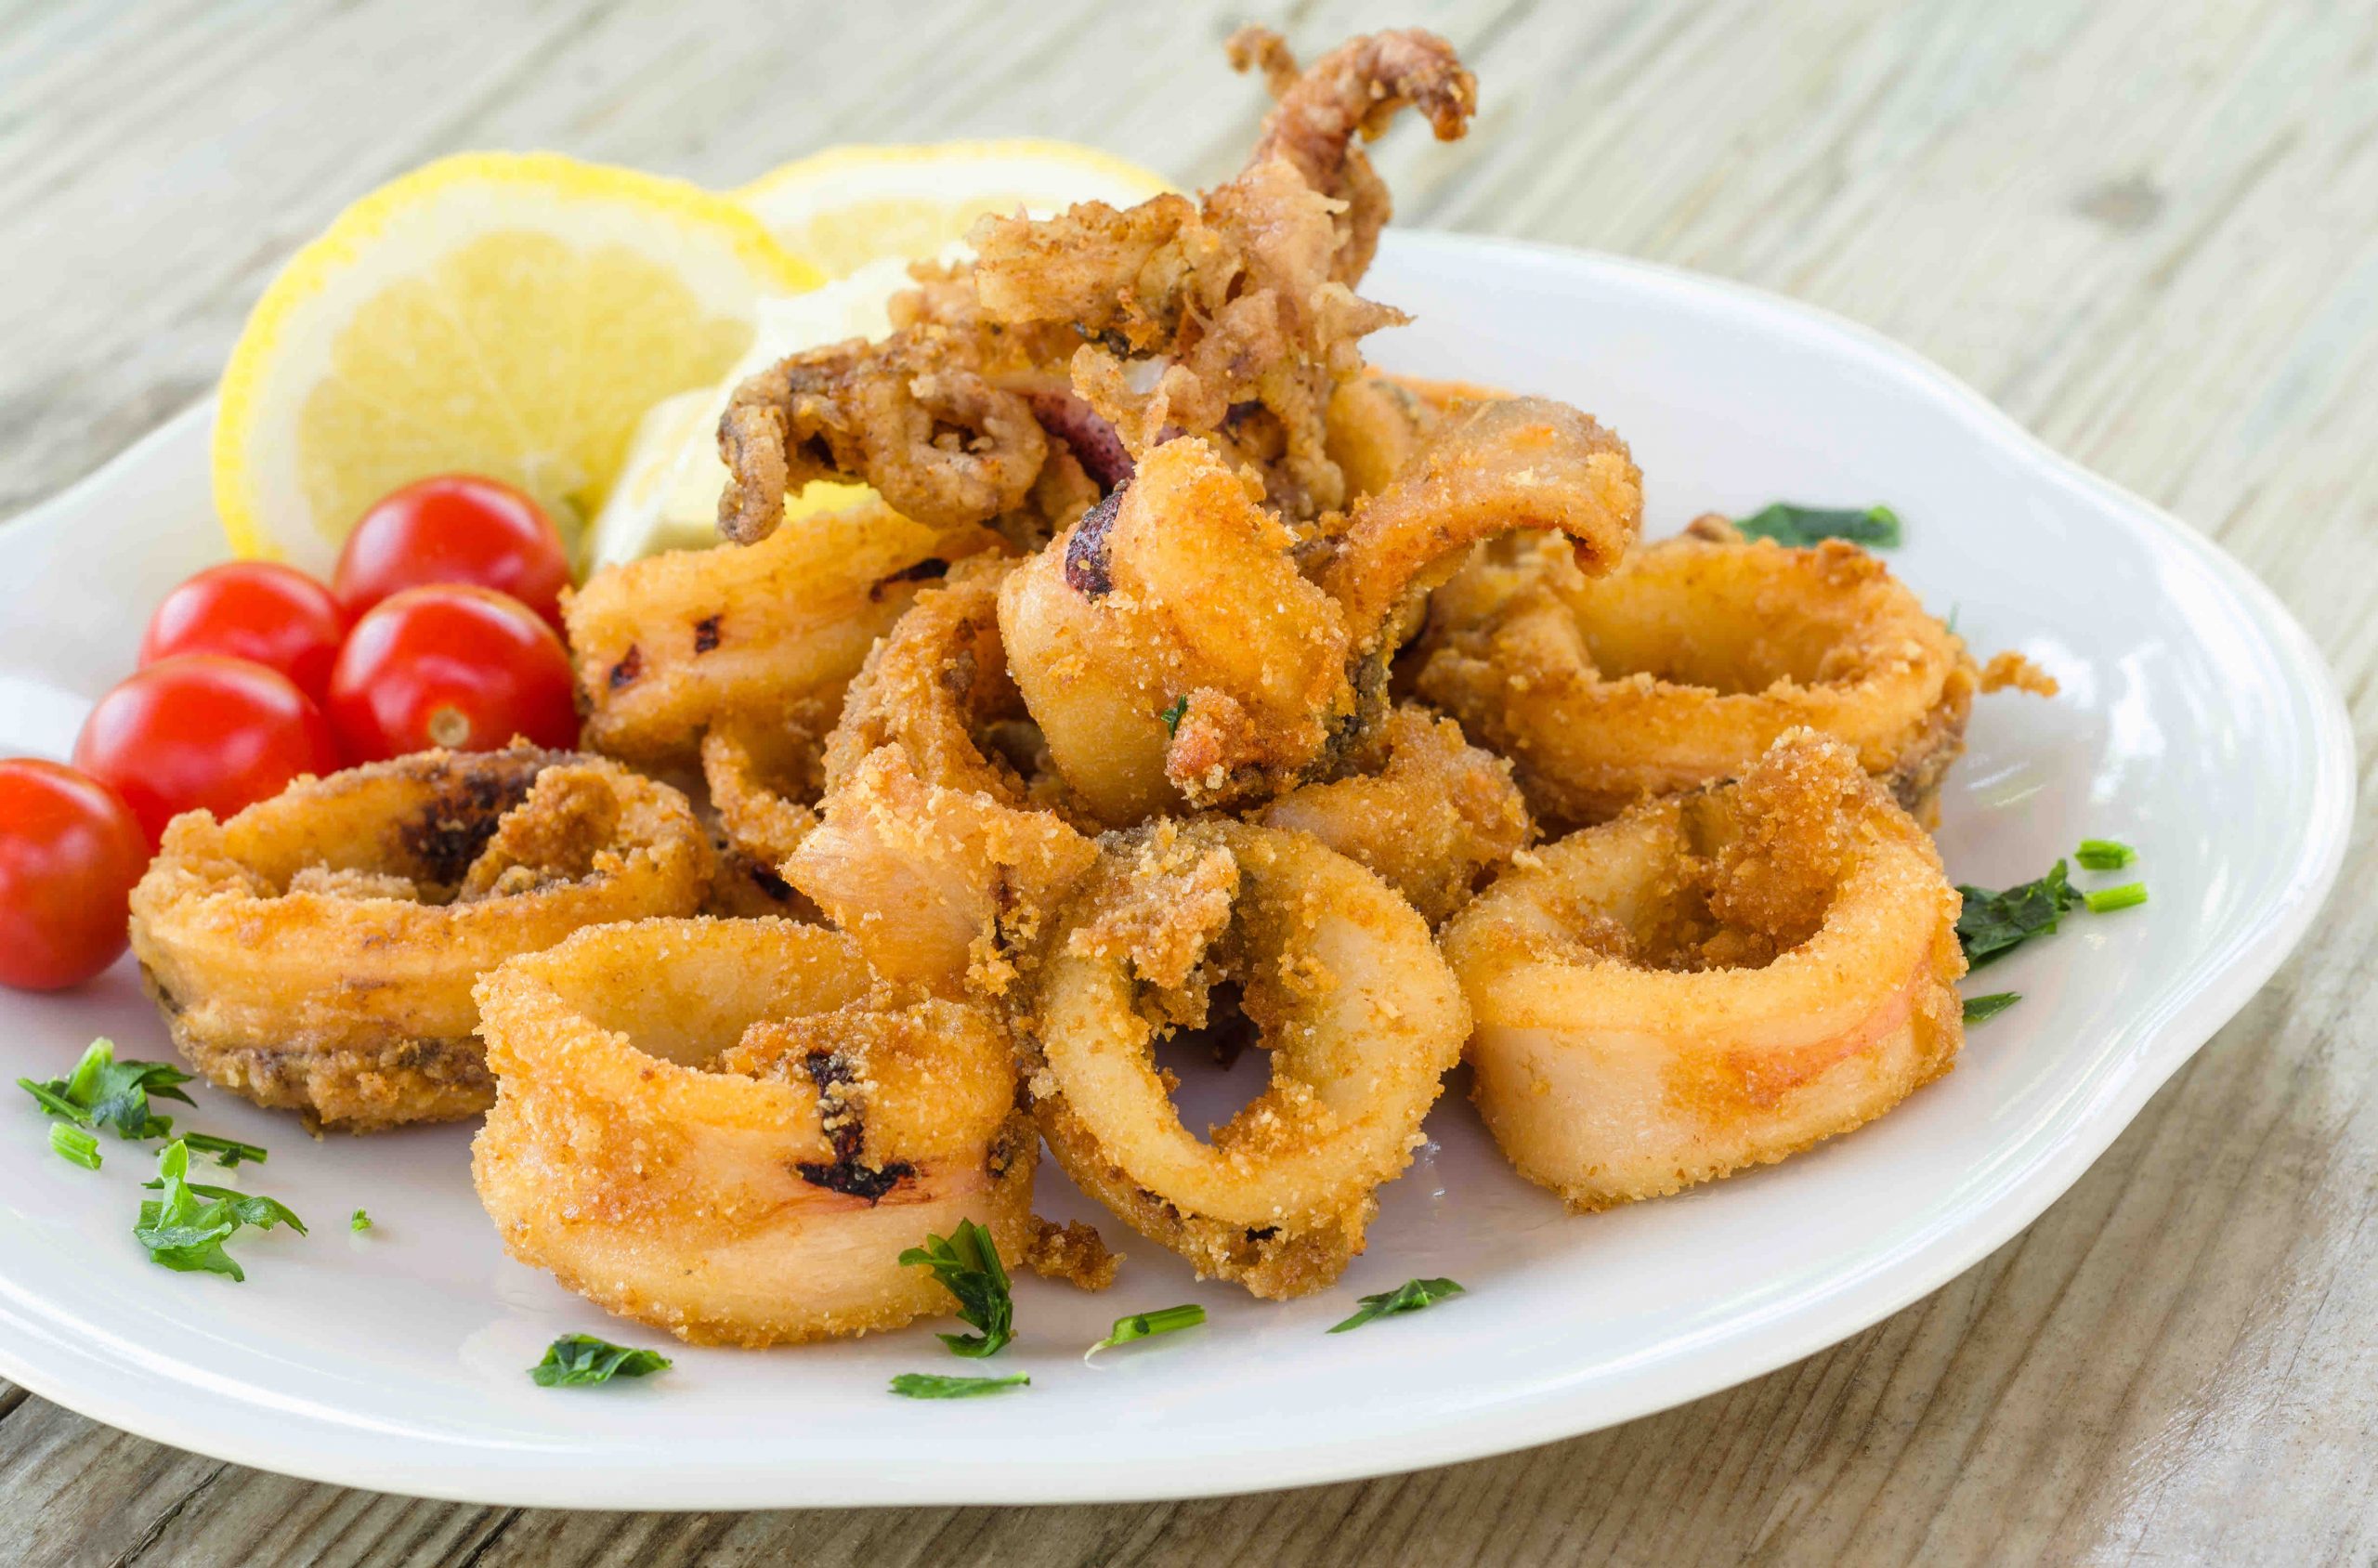 Italian Fried Calamari (Calamari Fritti) - The Matbakh